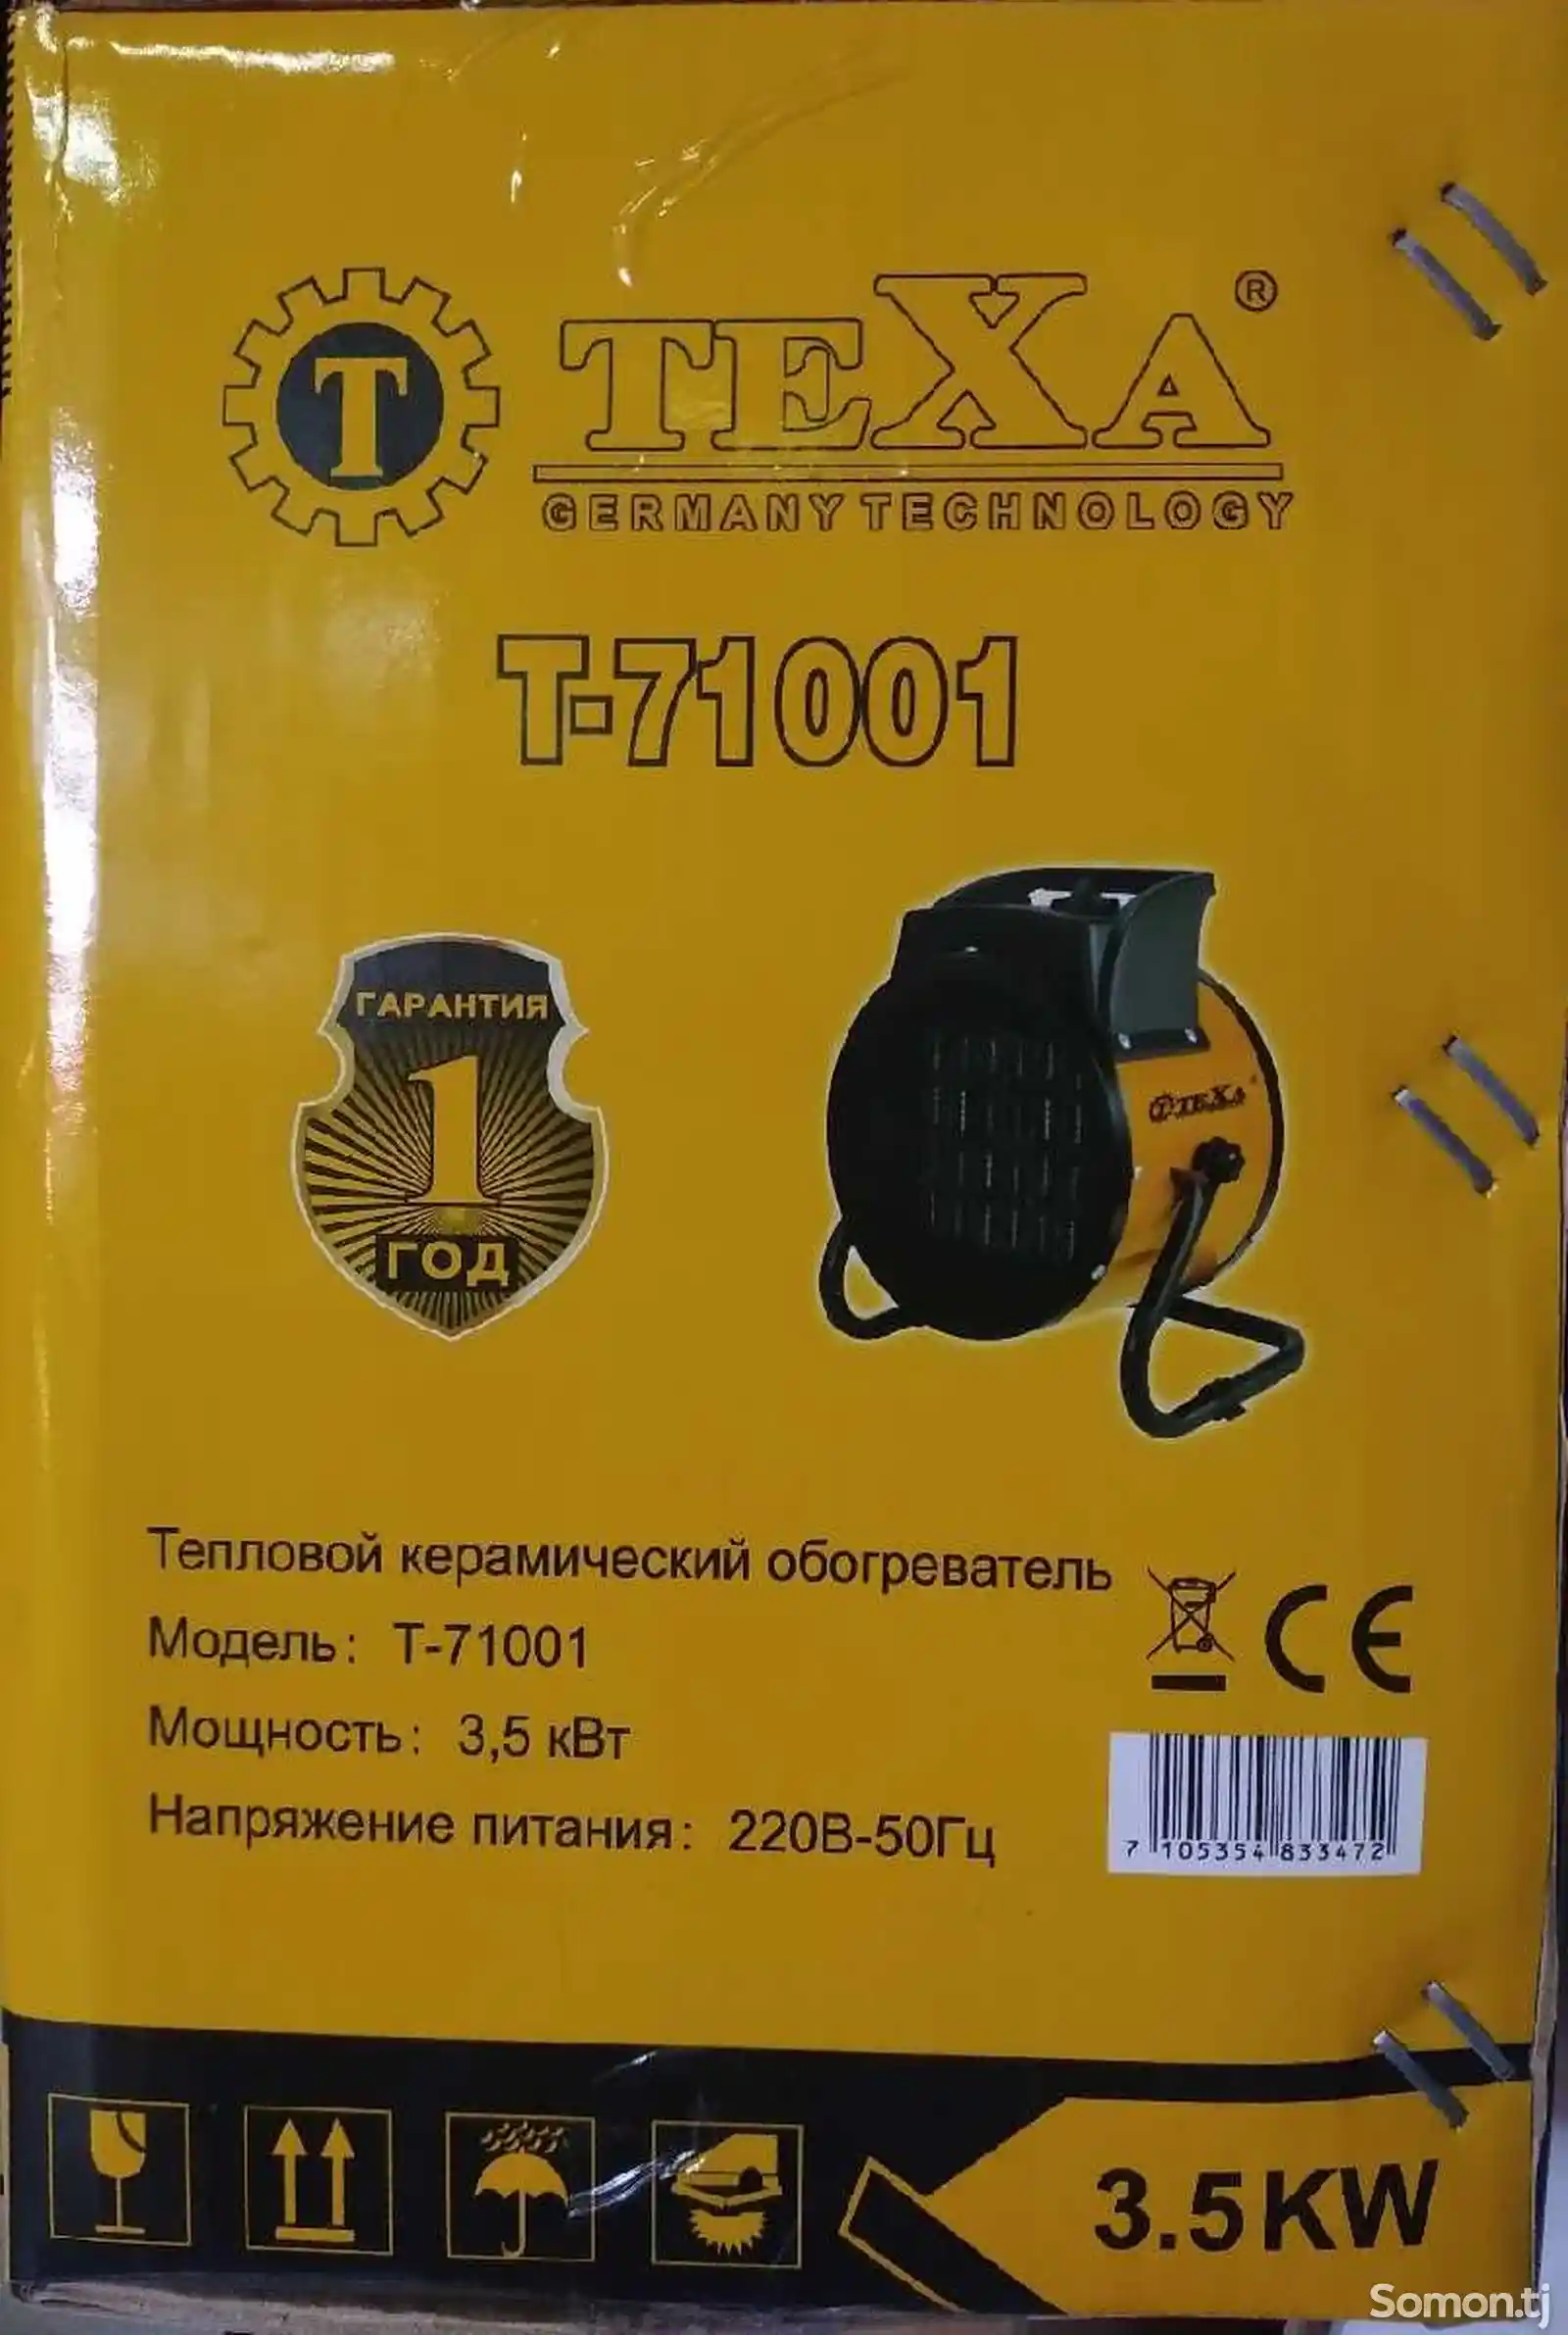 Тепловой керамический обогреватель T-71001-2